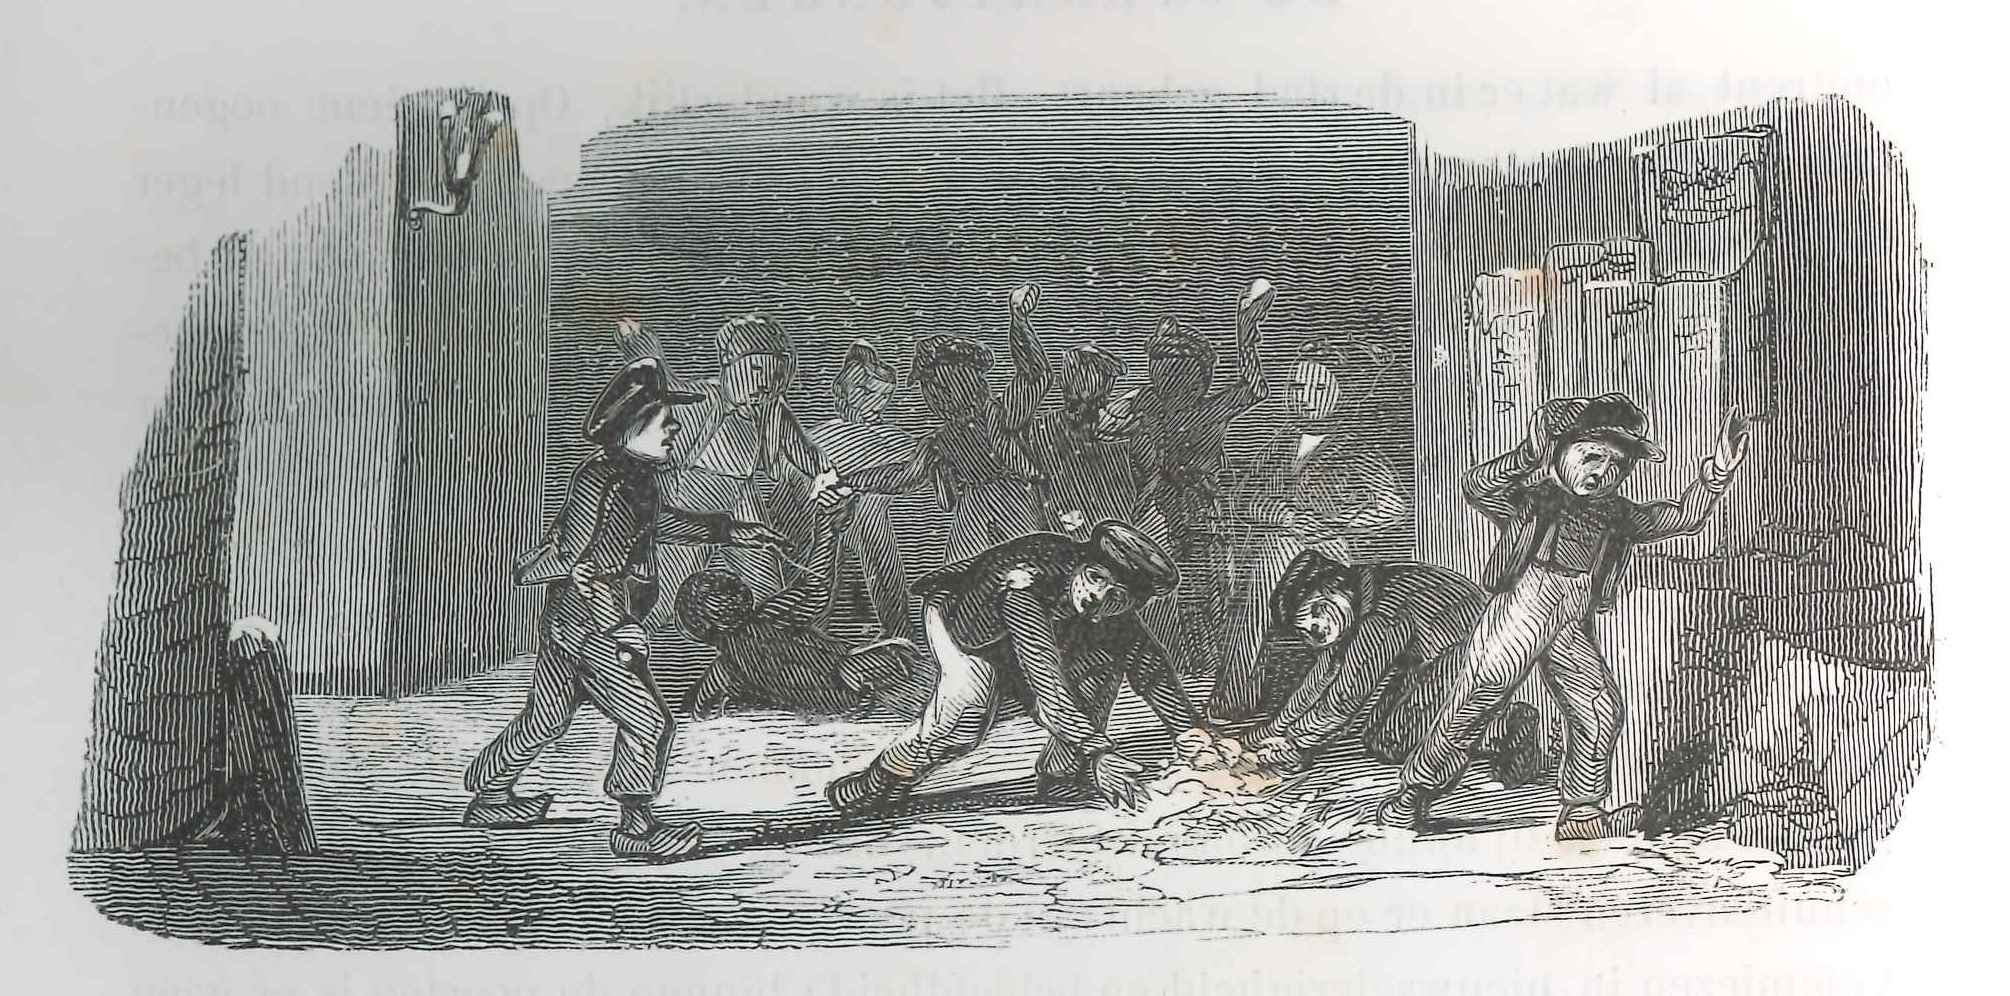  Kwajongens op straat. 'Karakterschetsen', 1841. HMDB.